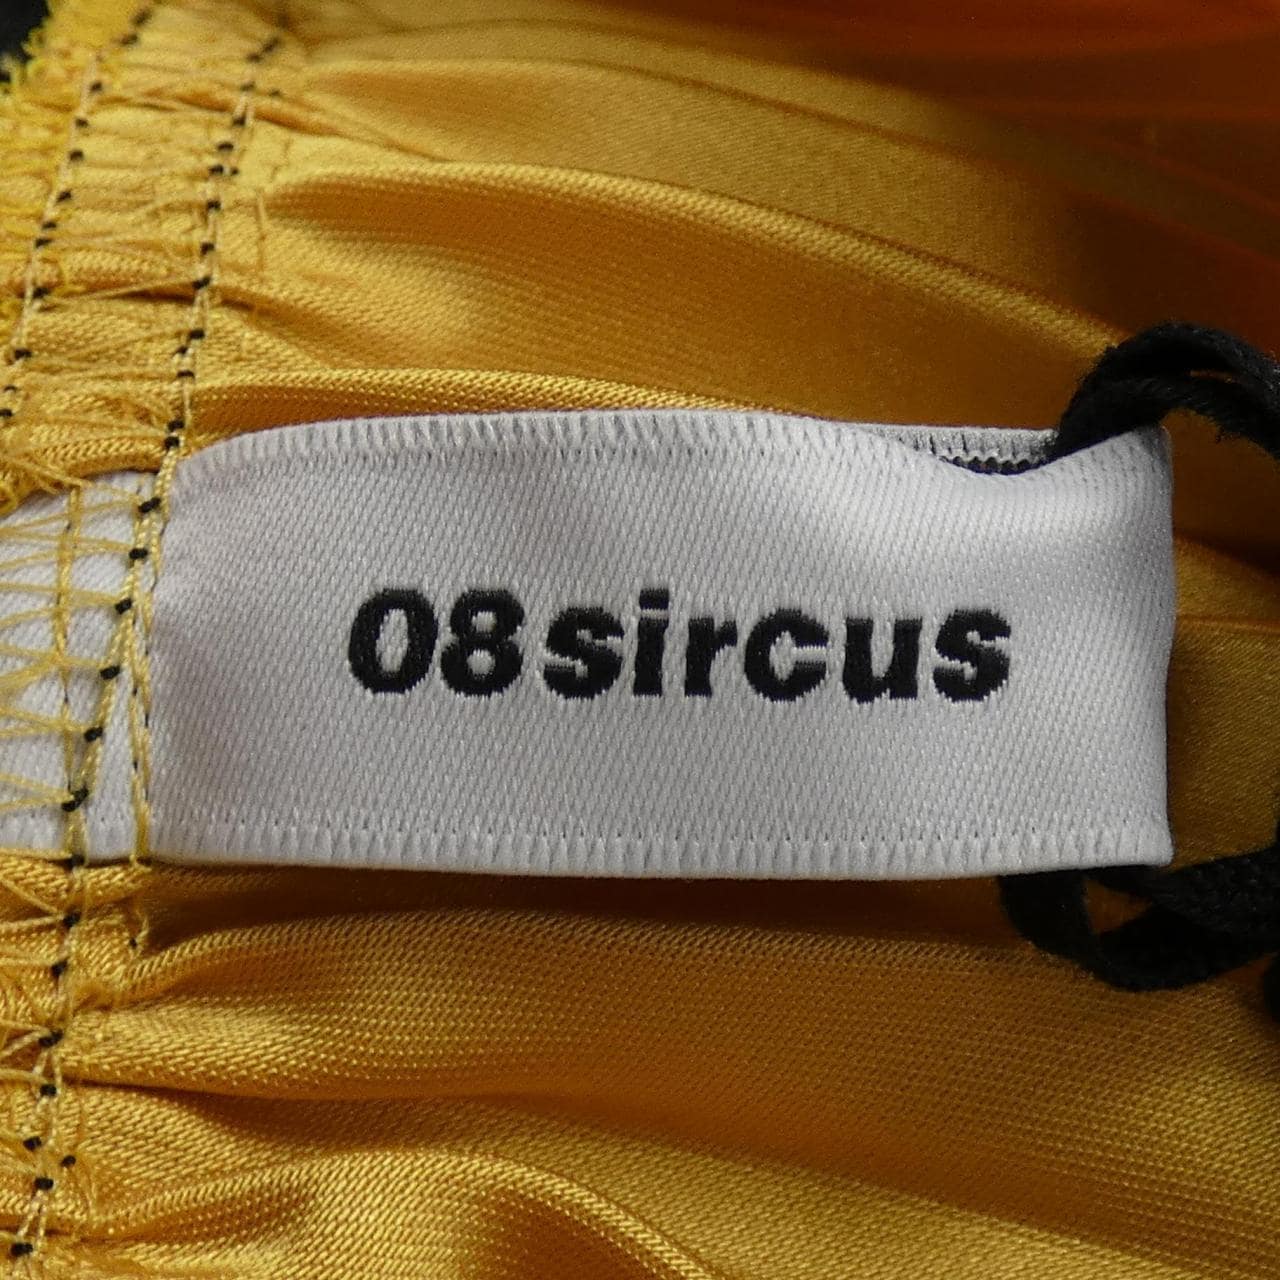 08 CIRCUS Skirt